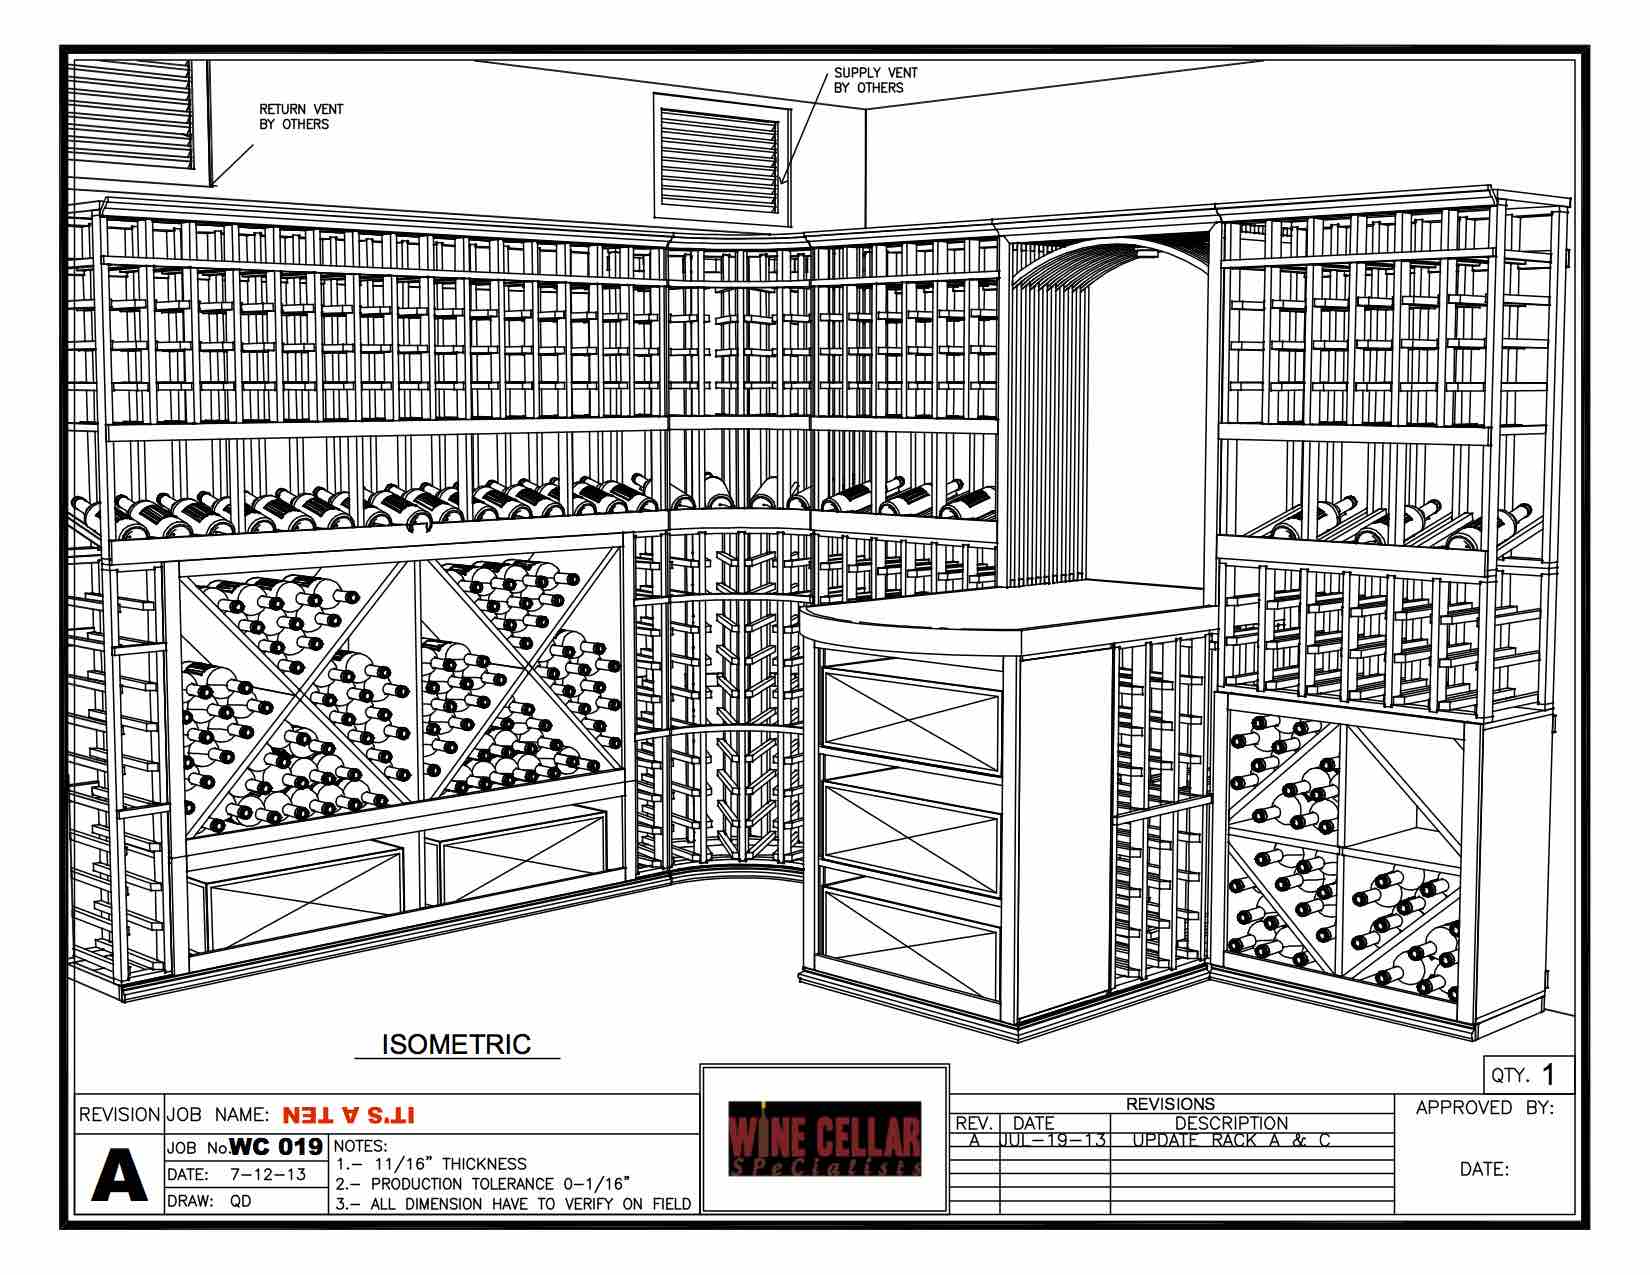 Chicago Basement Wine Cellar Design by Chicago Wine Cellar Builder